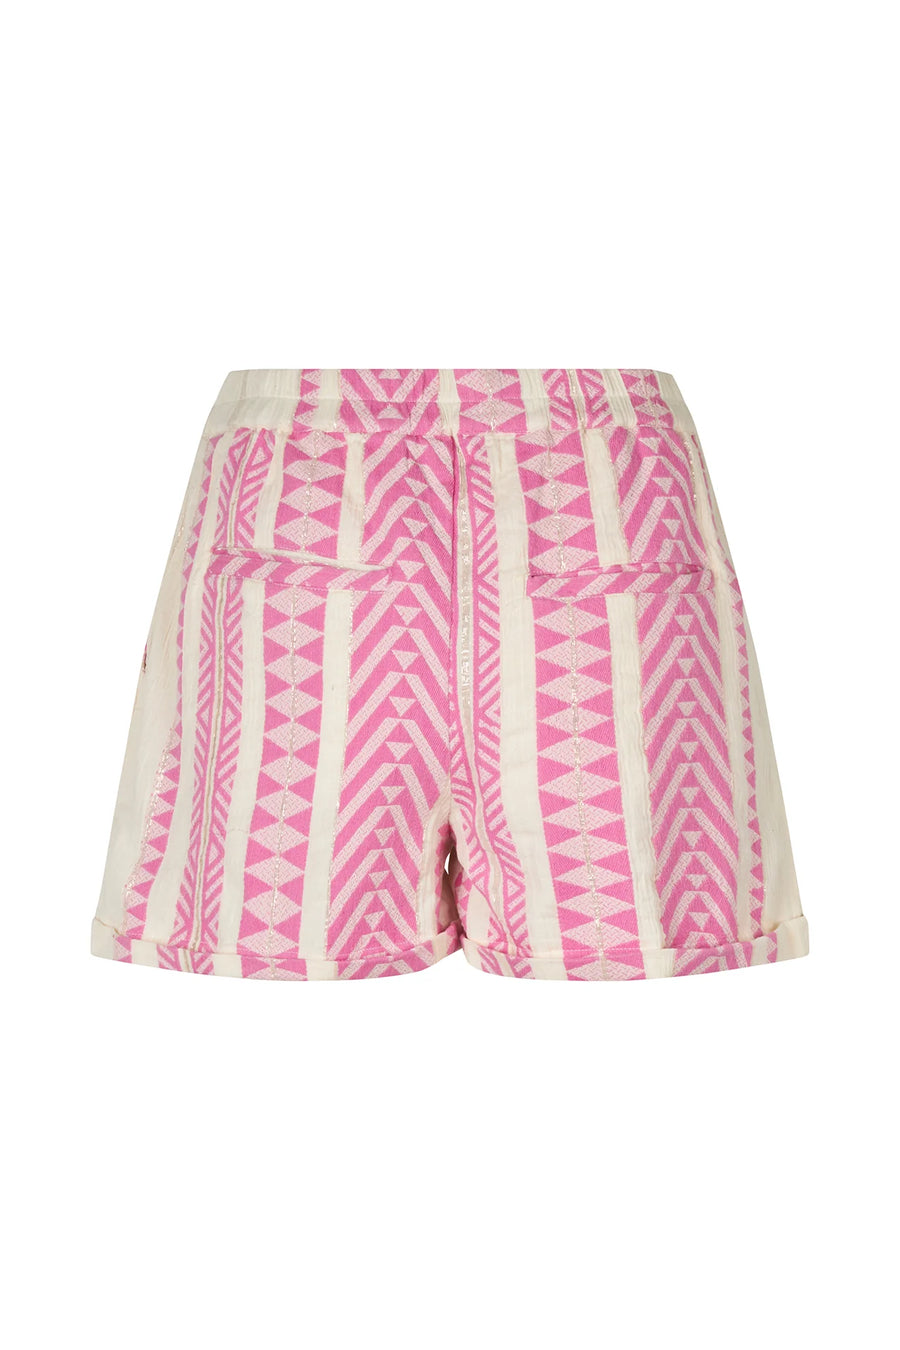 Lollys Laundry DelhiLL Shorts Pink